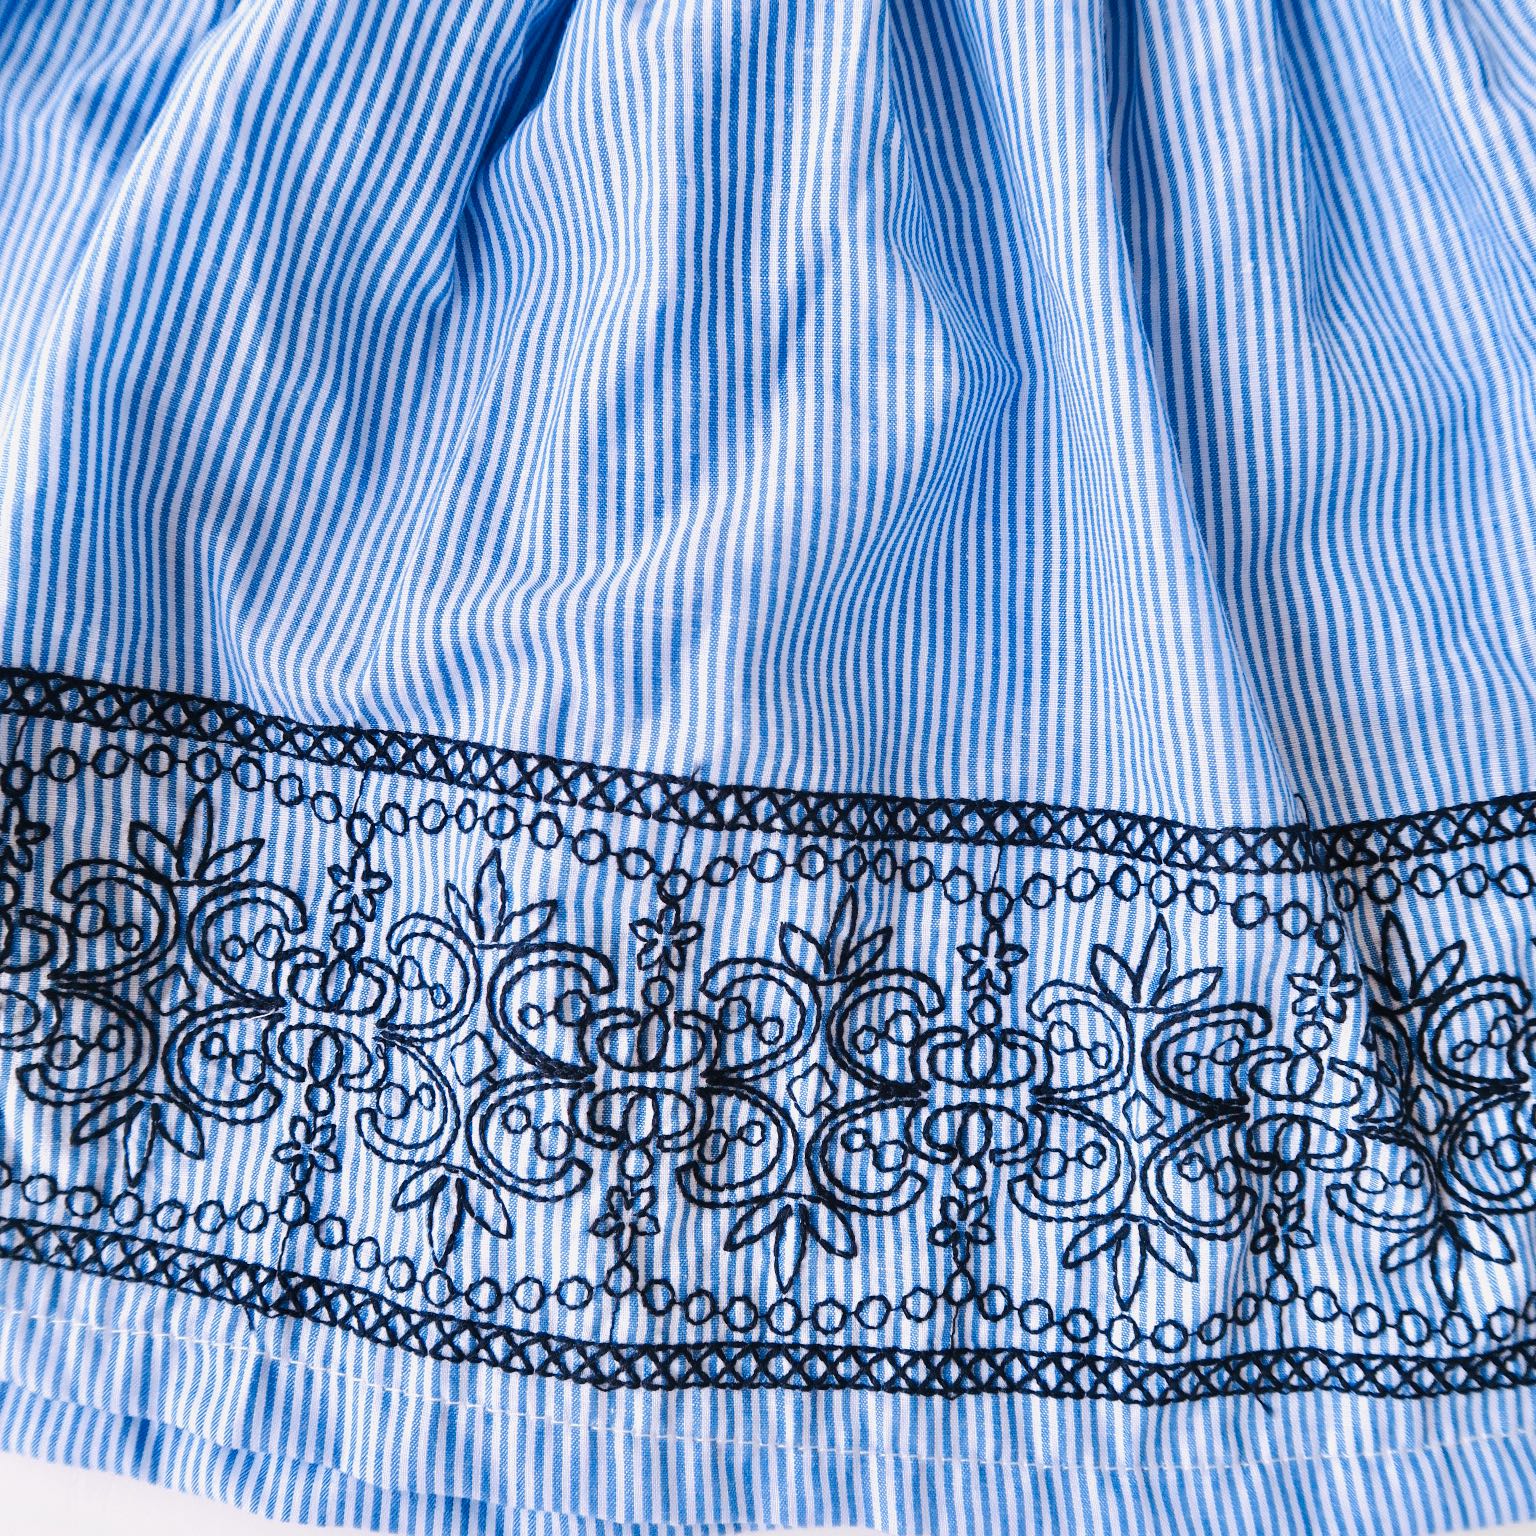 Iris Dress in Blue Stripes Embroidery - Lil' Tati